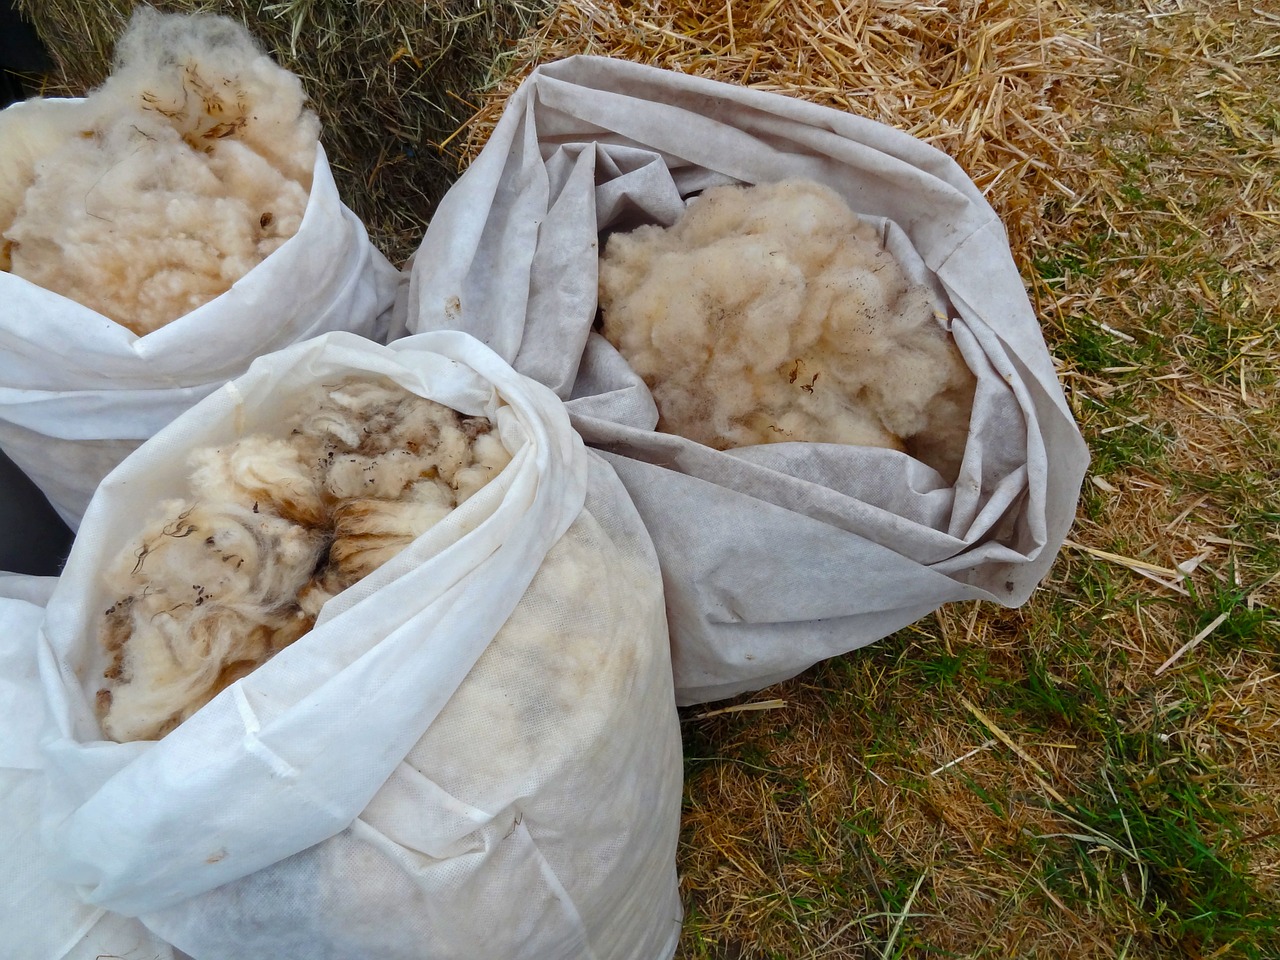 bags of fleece